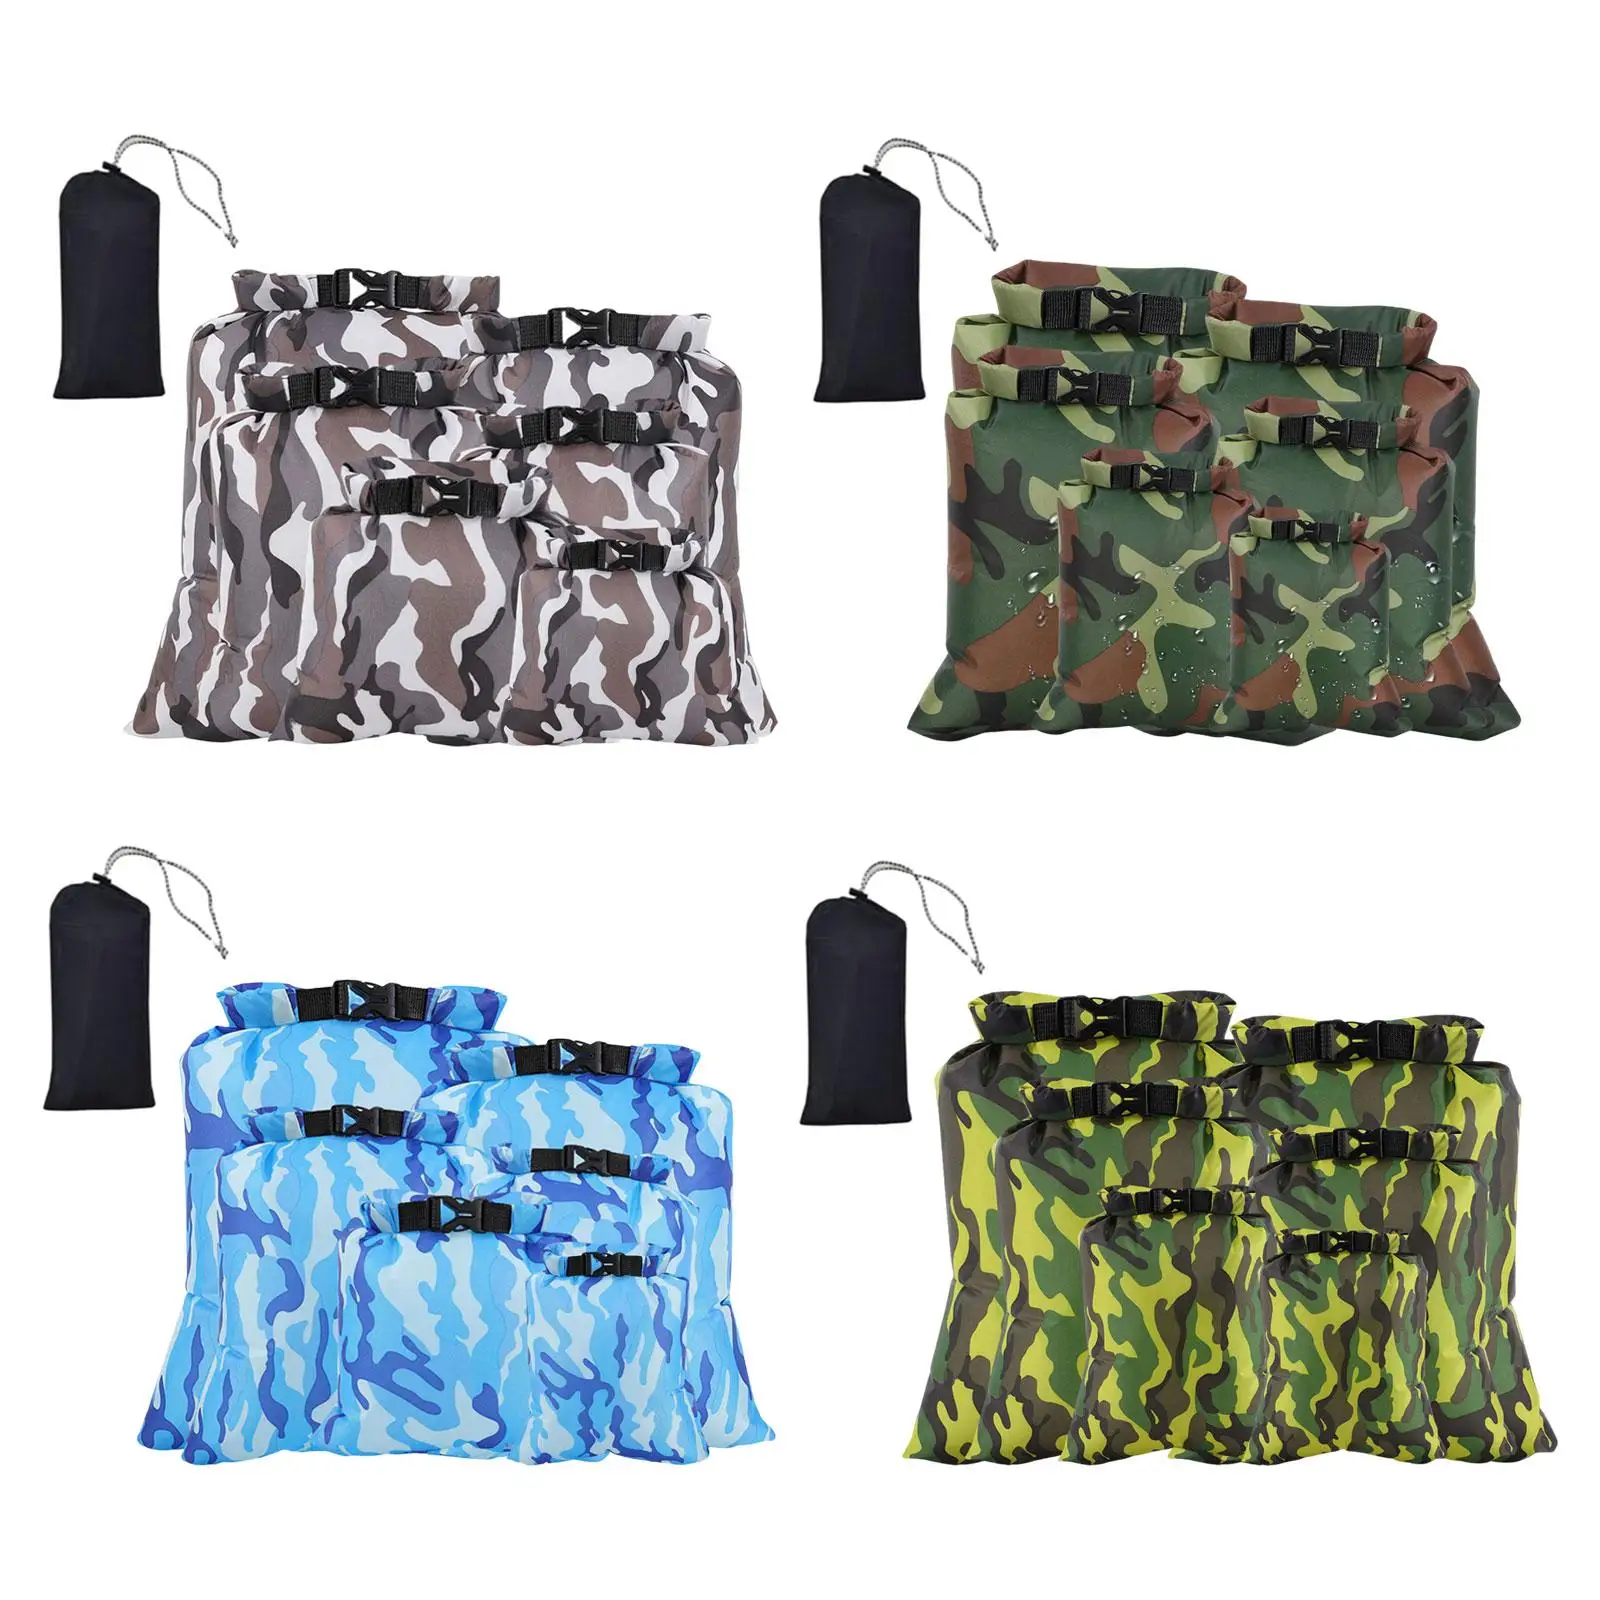 6x Waterproof Dry Bag Keeps Gear Dry Roll Top Waterproof Lightweight Storage Pack Dry Sack for Rafting Sailing Kayaking Gym